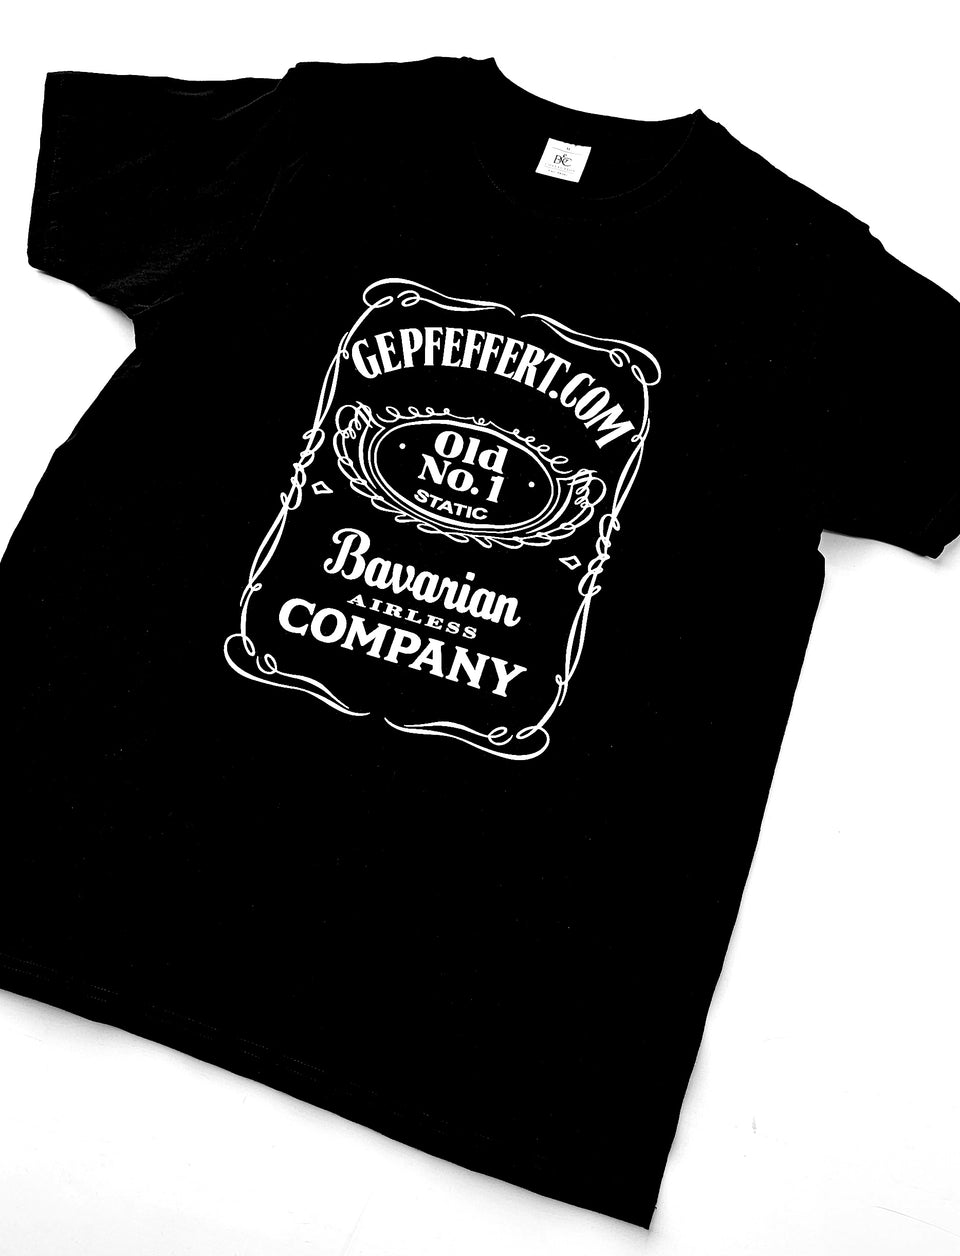 gepfeffert.com Old No.1 Bavarian Airless Company T-Shirt Schwarz - gepfeffert.com